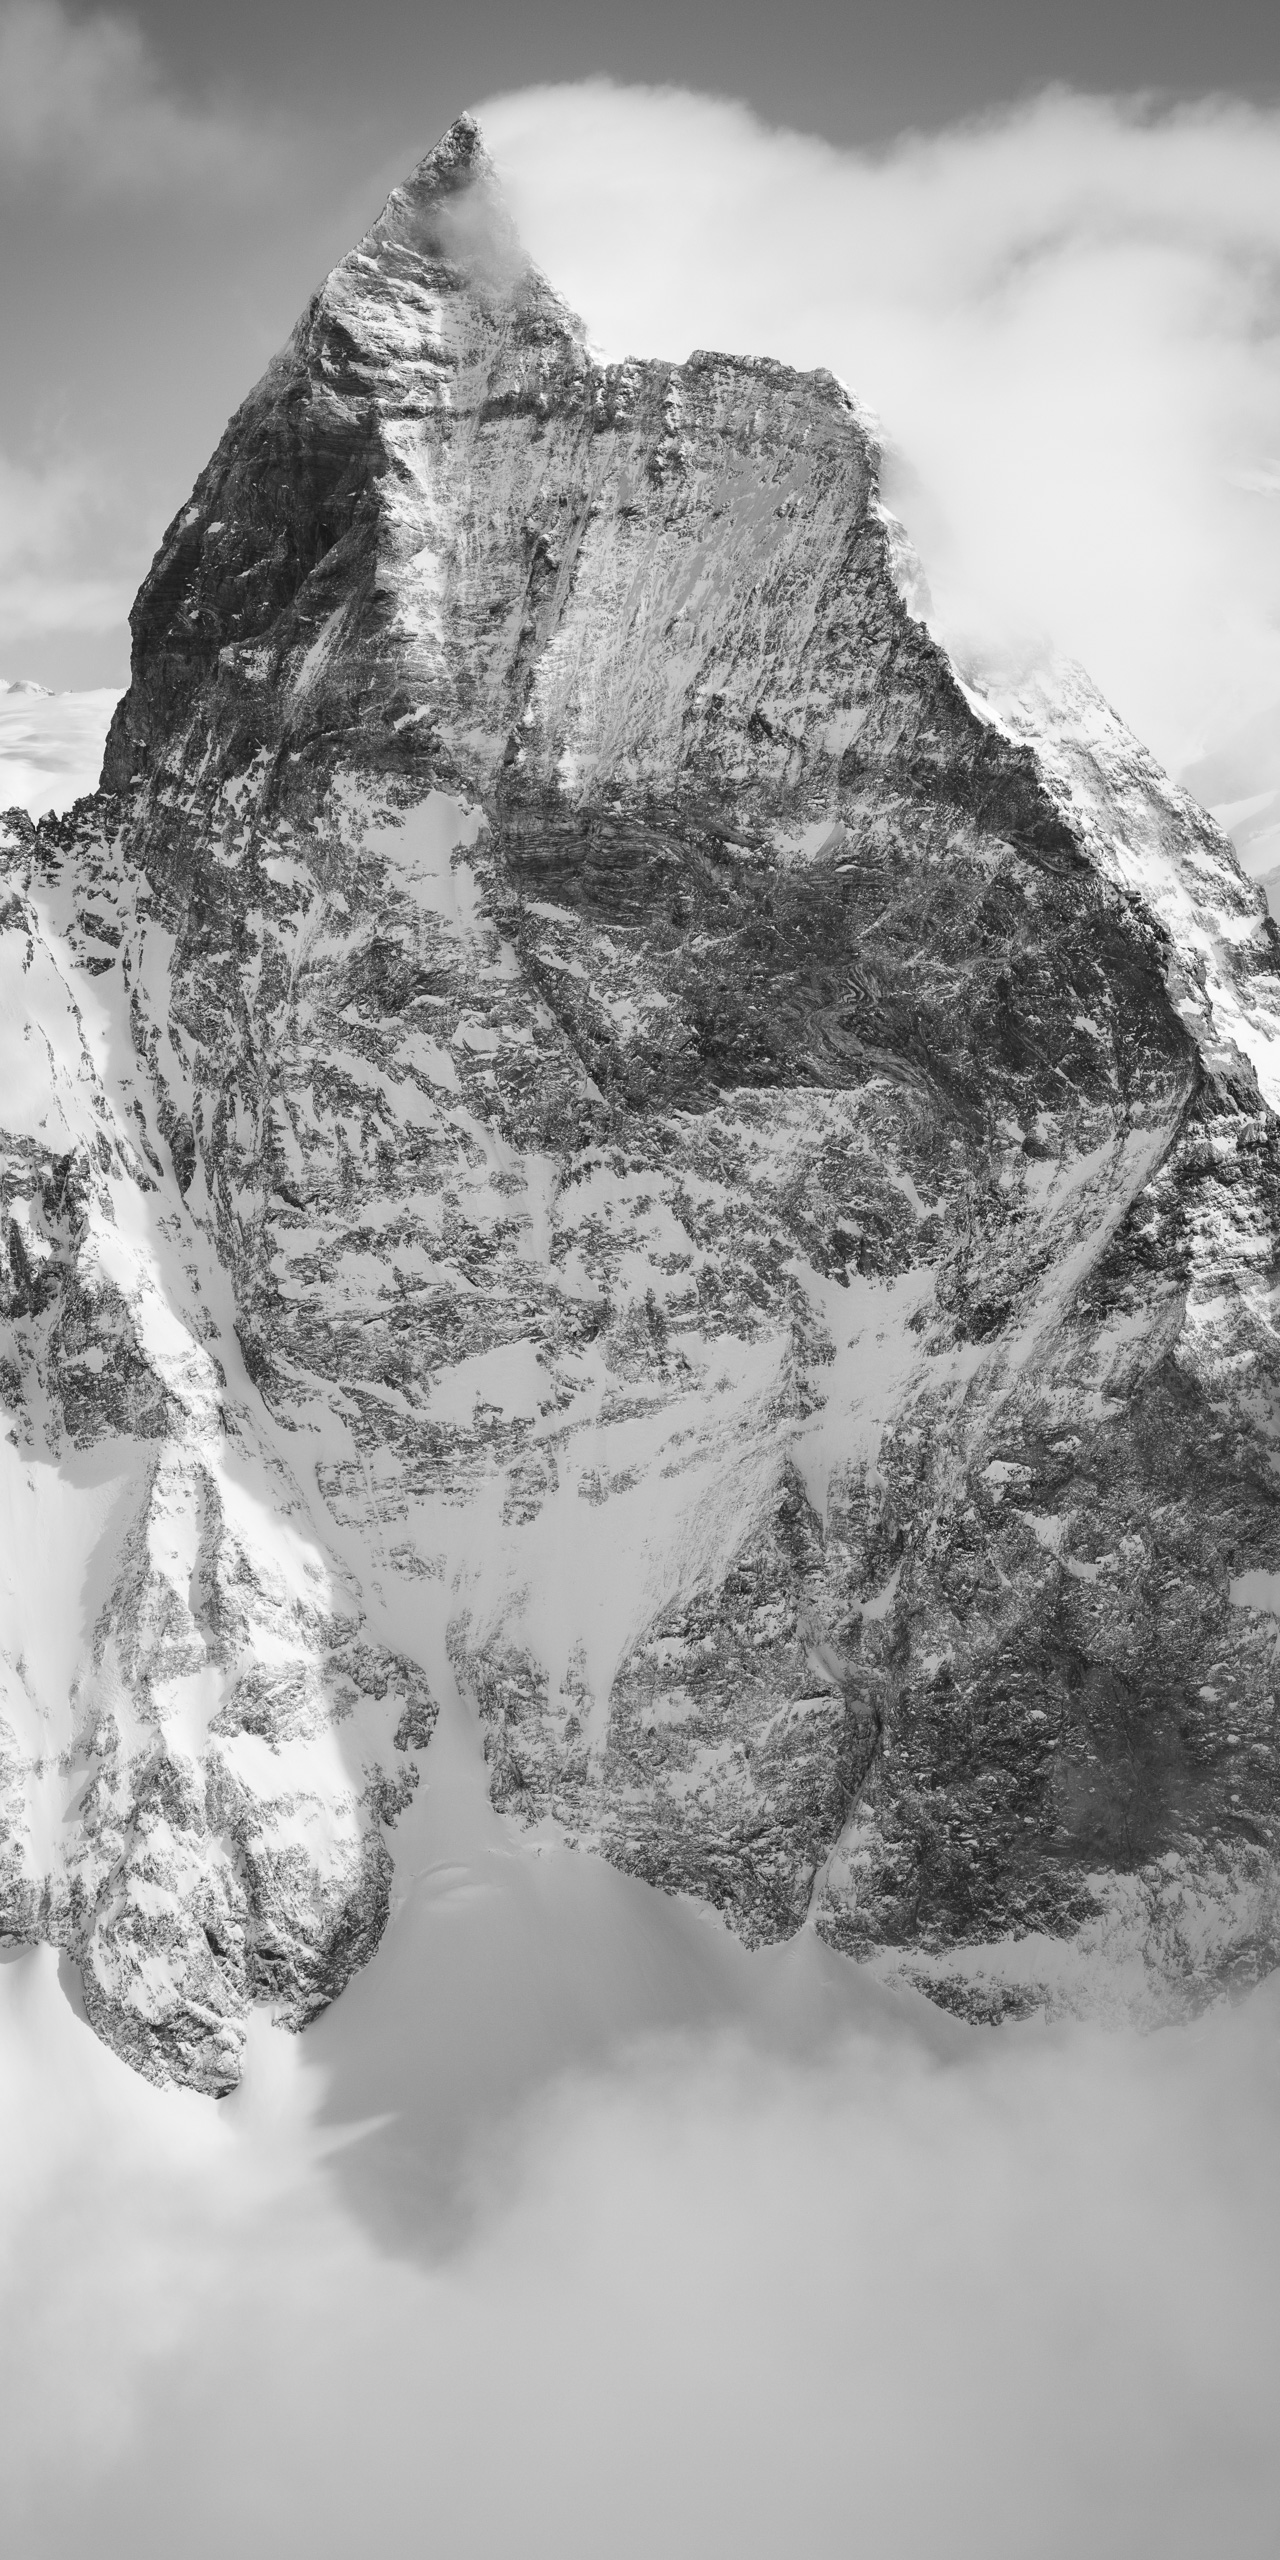 Matterhorn - Poster panoramique de montagne en noir et blanc - Massif montagneux suisse